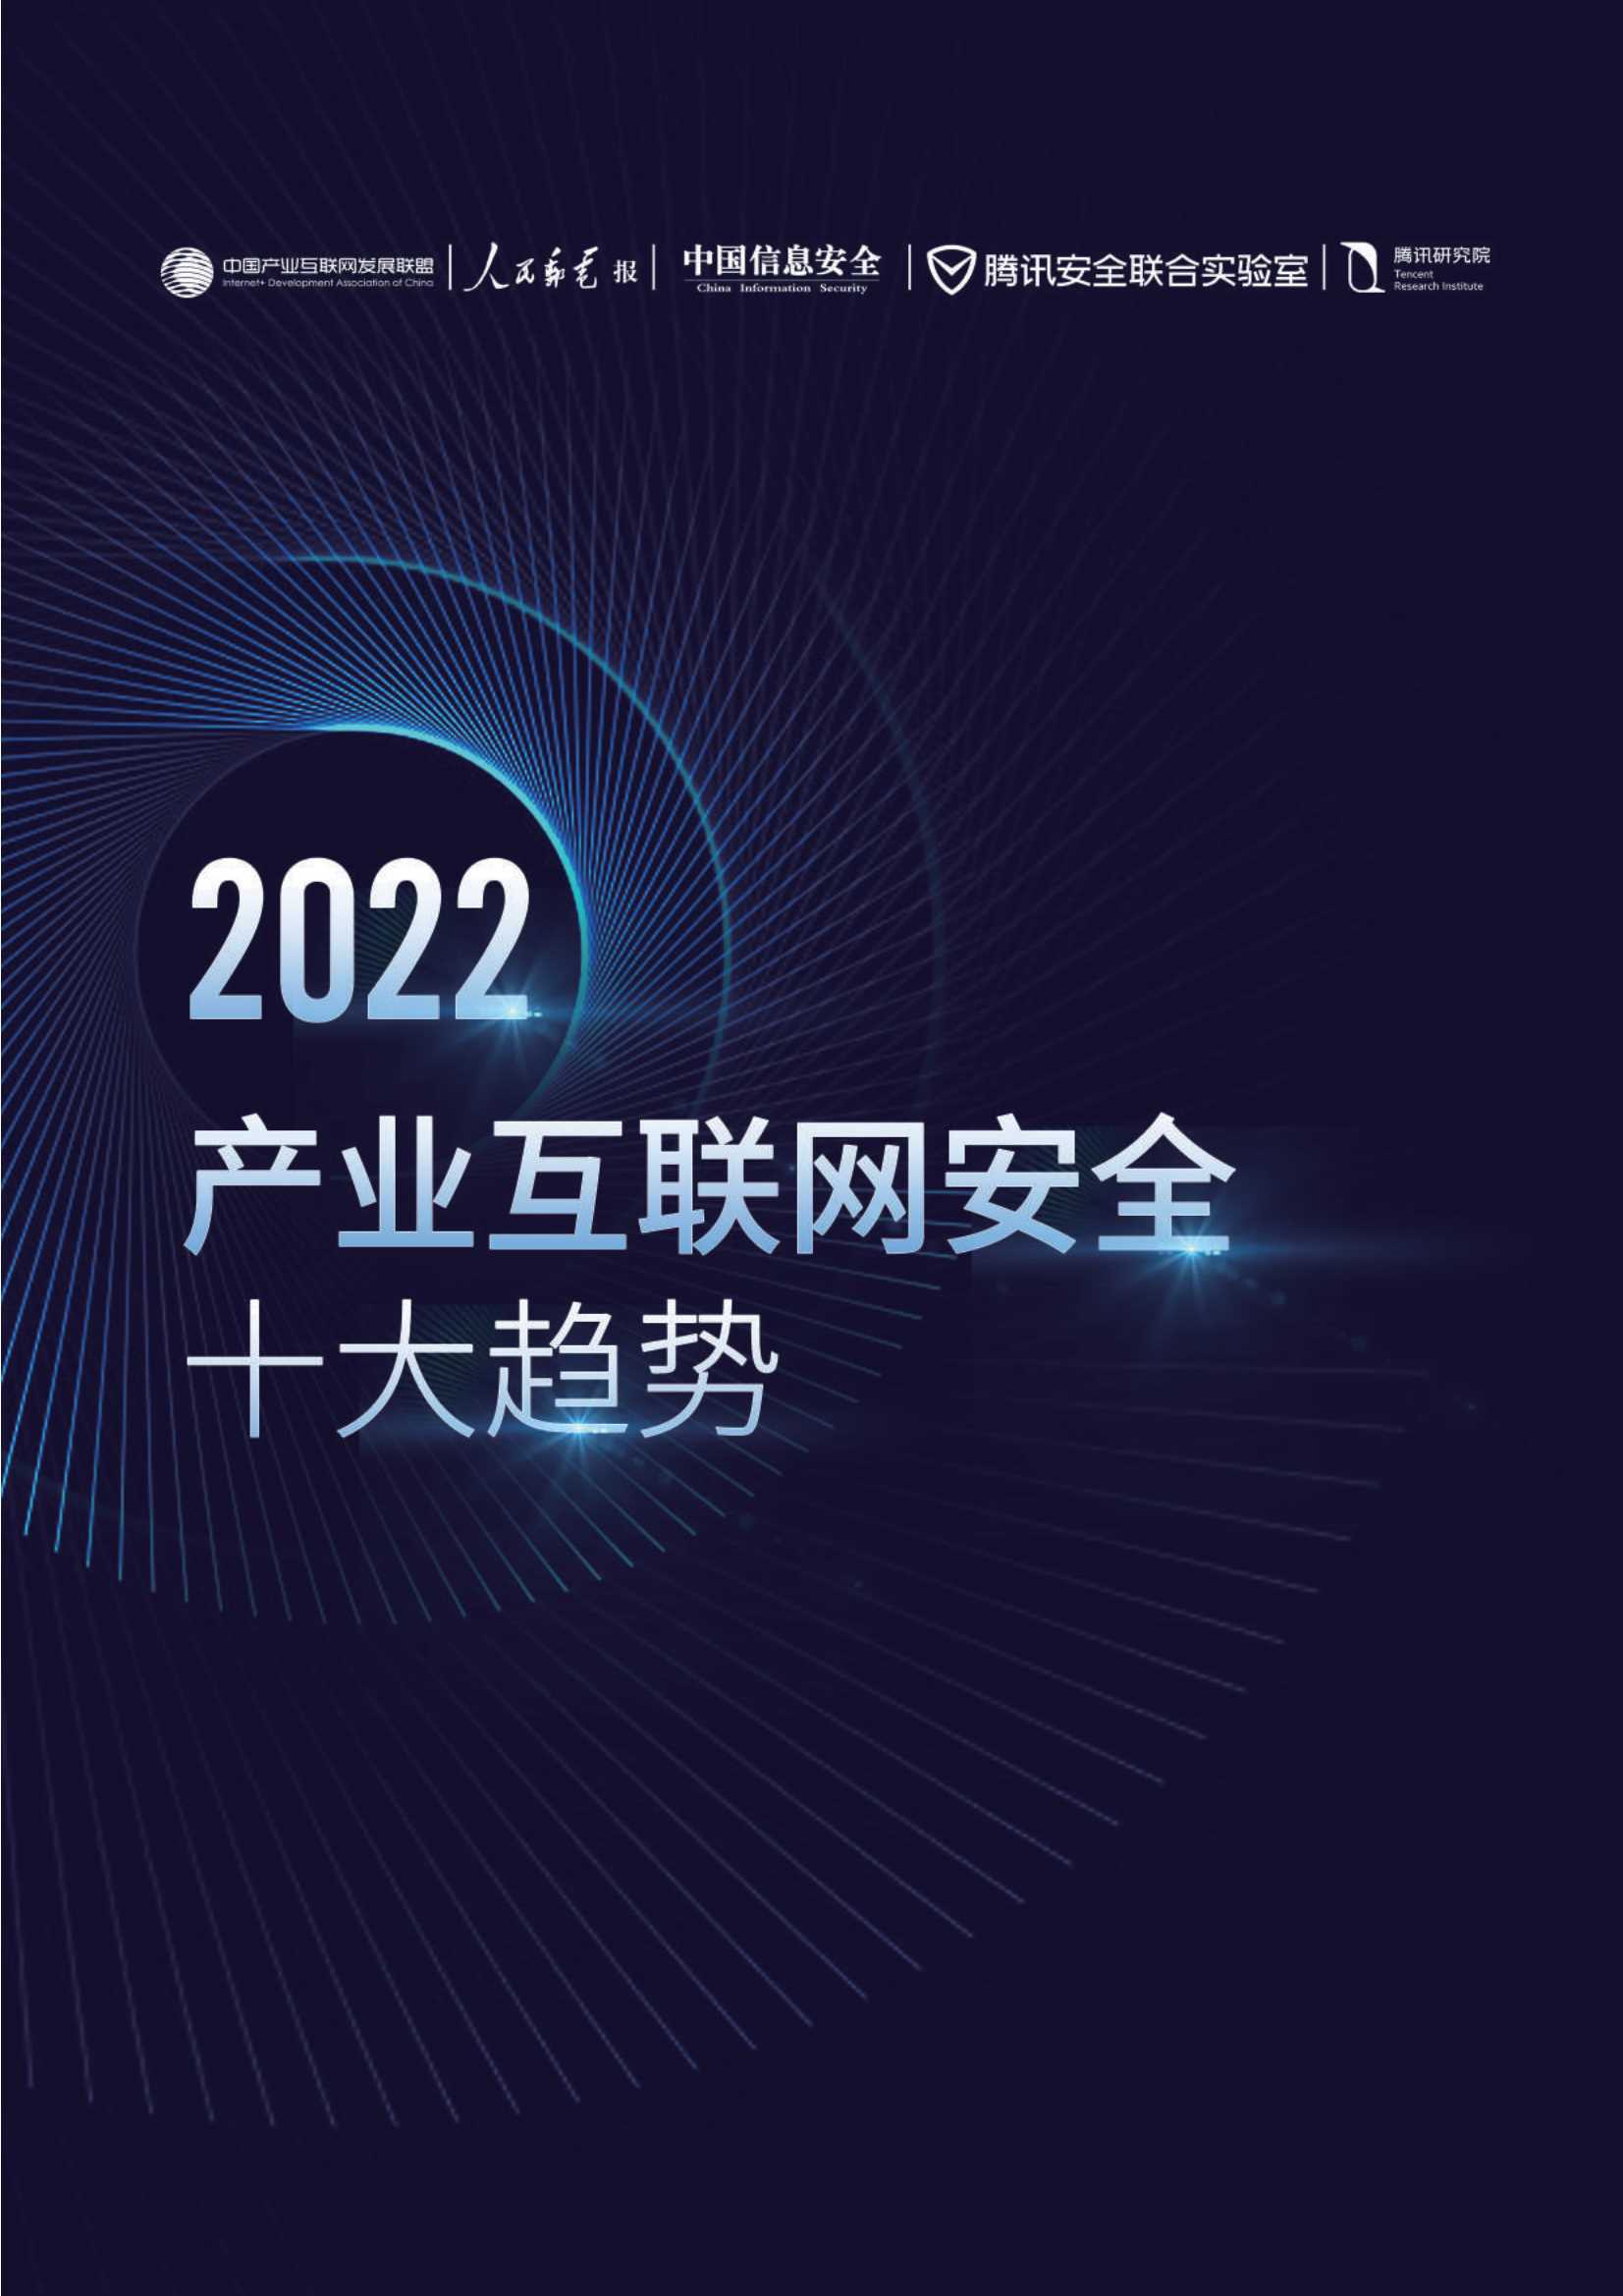 腾讯-2022产业互联网安全十大趋势-2022.03-34页